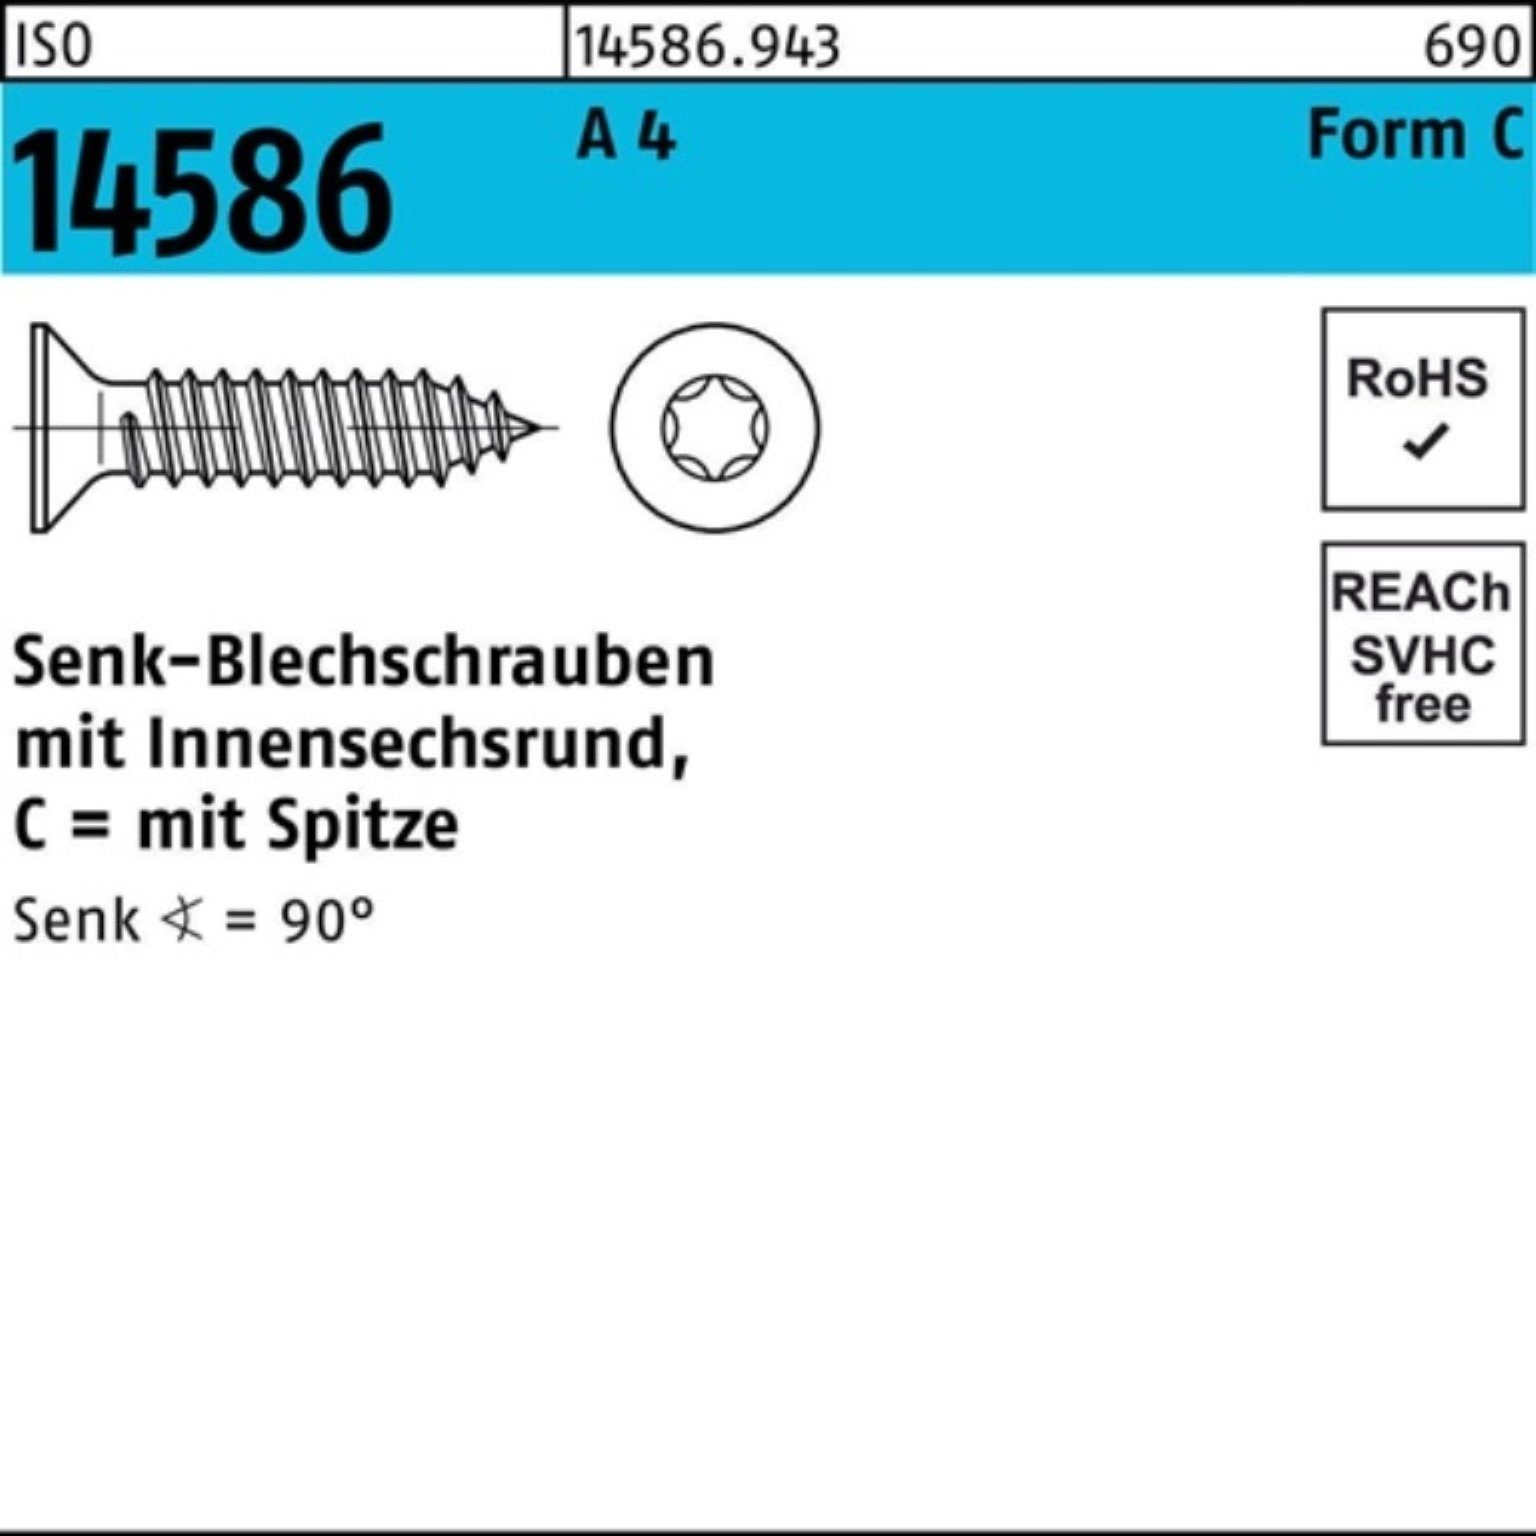 Reyher Schraube 250er Pack Senkblechschraube ISO 14586 ISR/Spitze 6,3x 70-T30 A 4 250